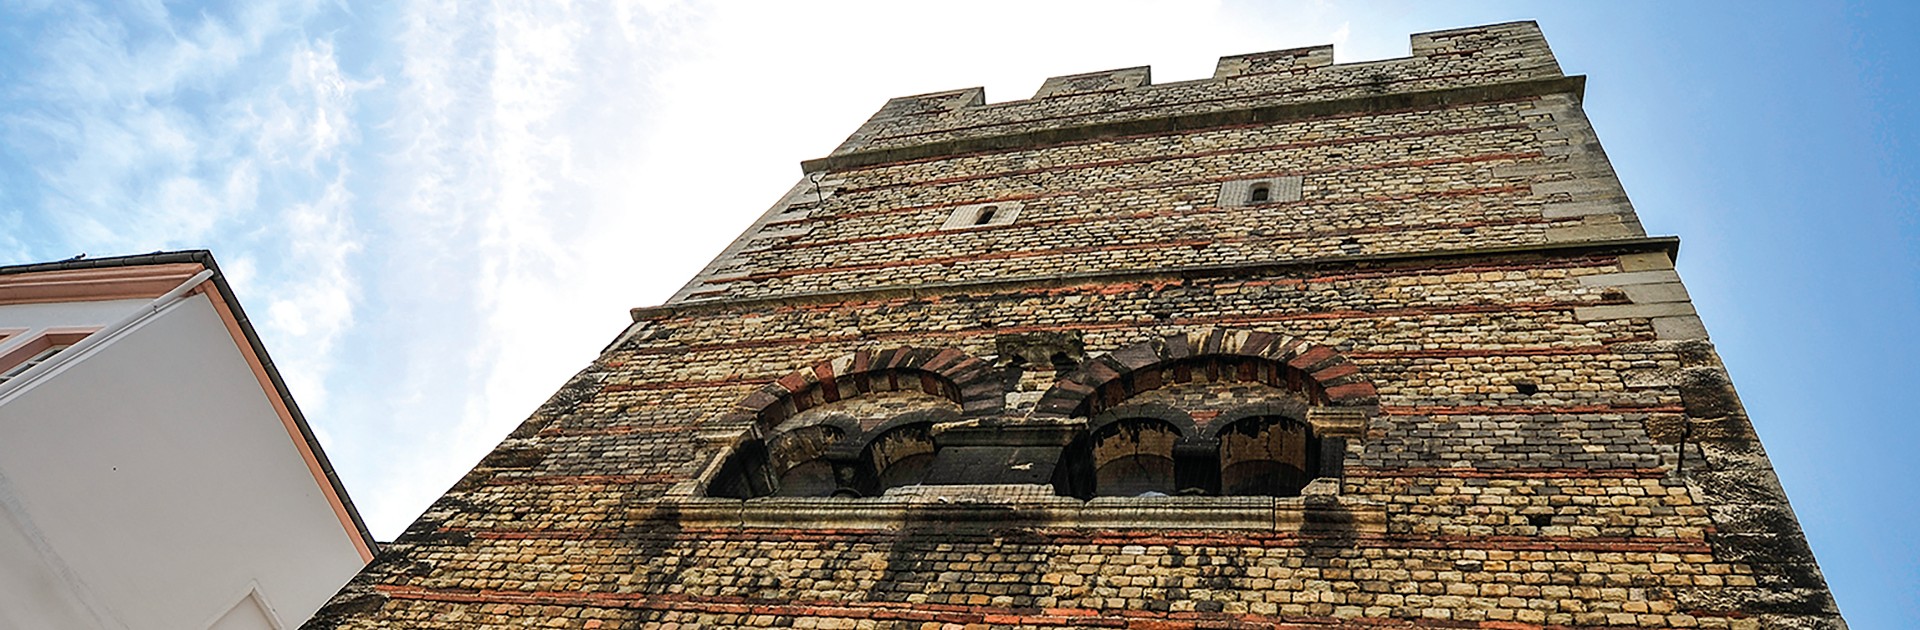 Frankenturm Trier